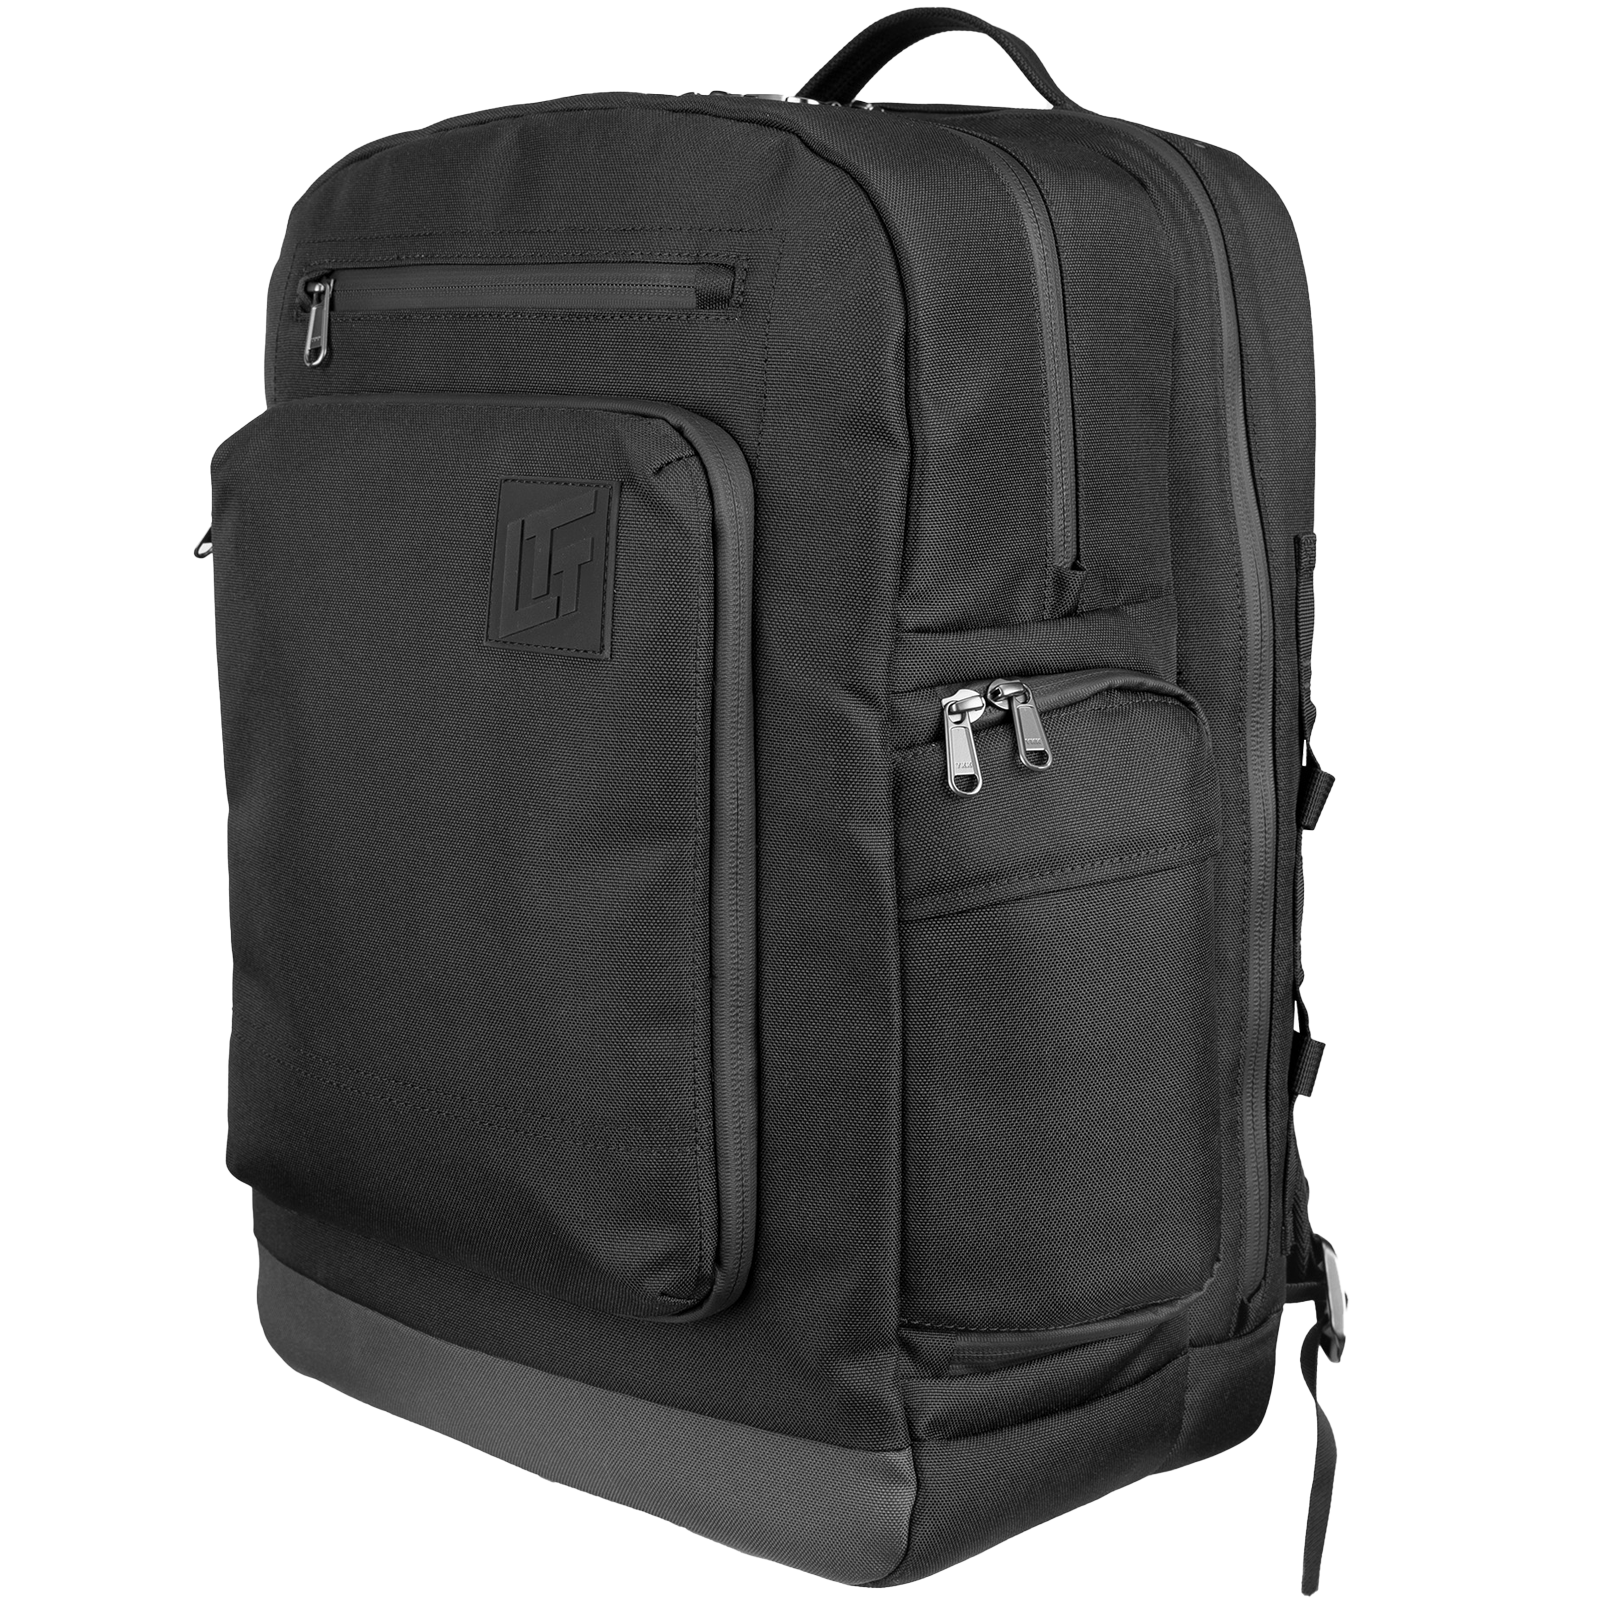 Navigator-T71 Laptop Backpack 18L